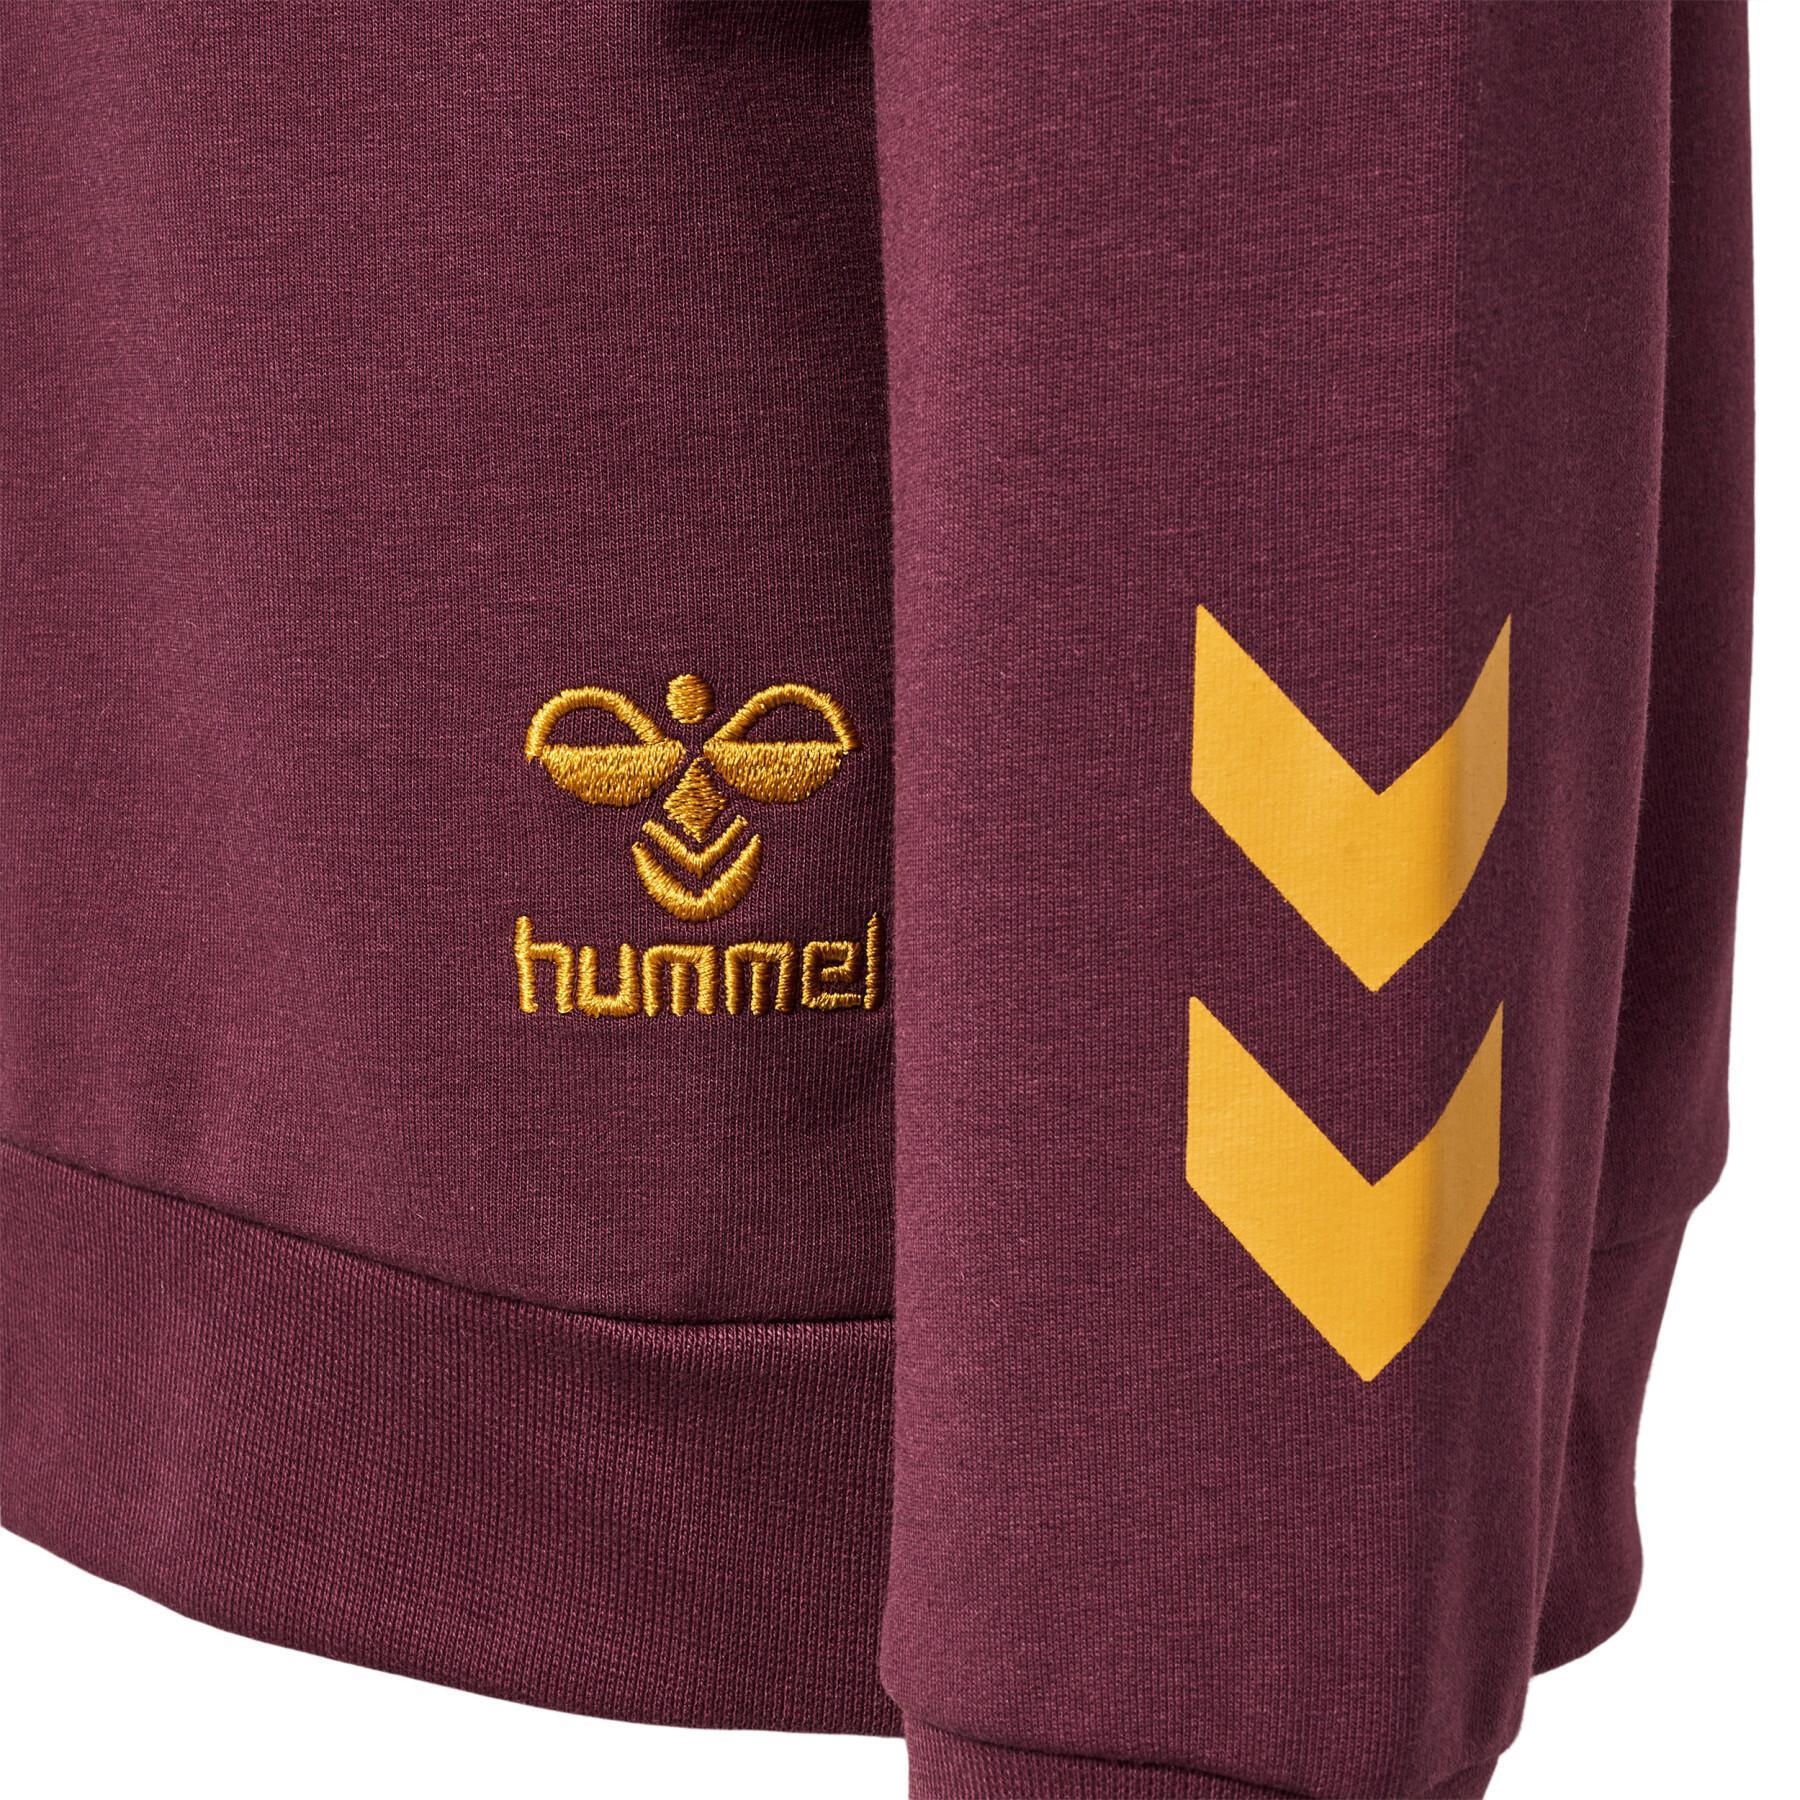 Sudadera con capucha para niños Hummel Harry Potter